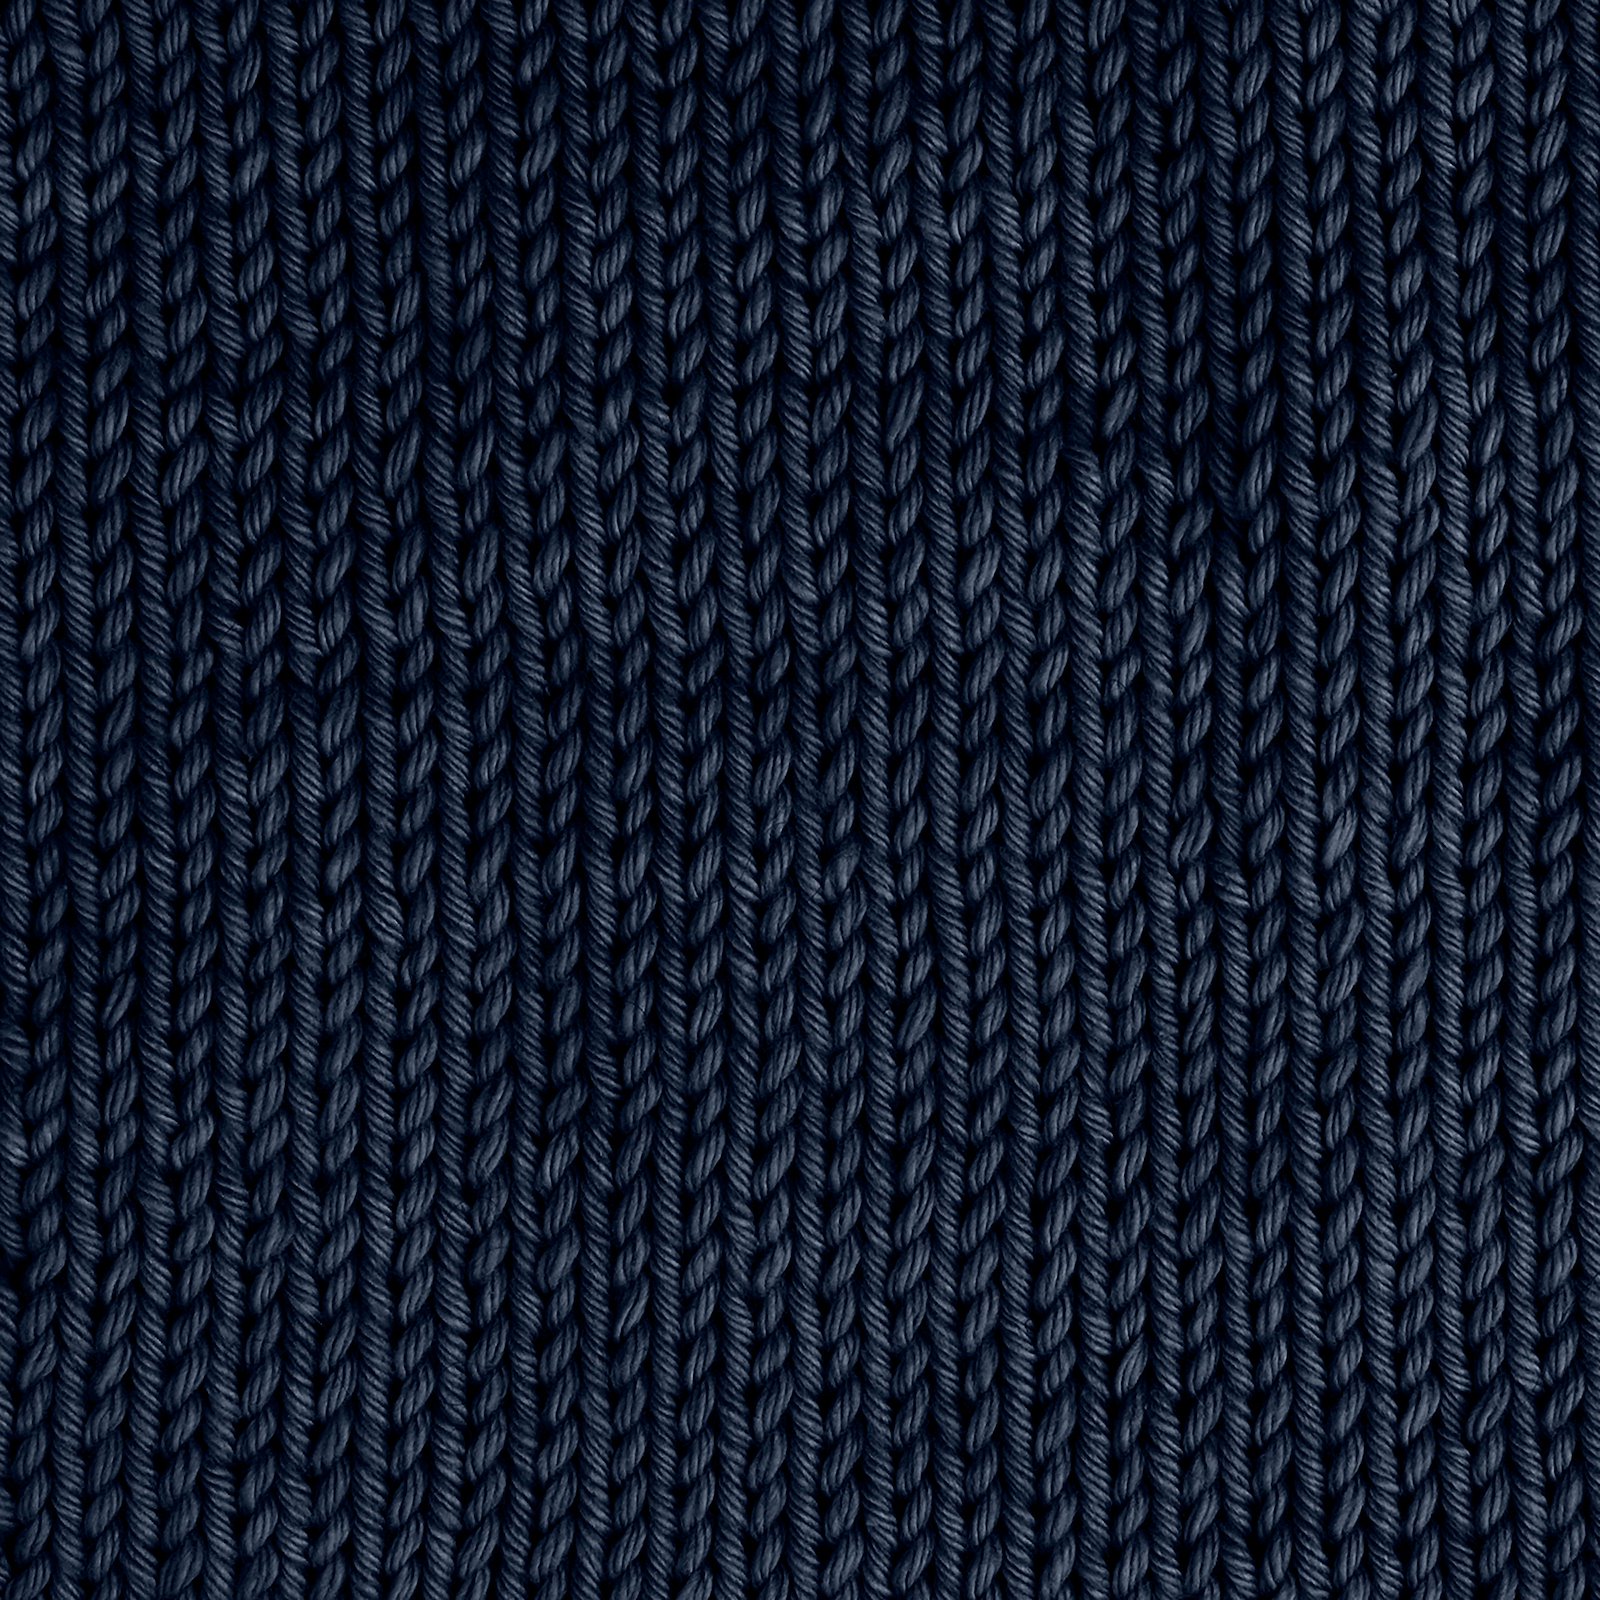 FRAYA, 100% cotton 8/8 yarn "Honest", navy 90061023_sskit